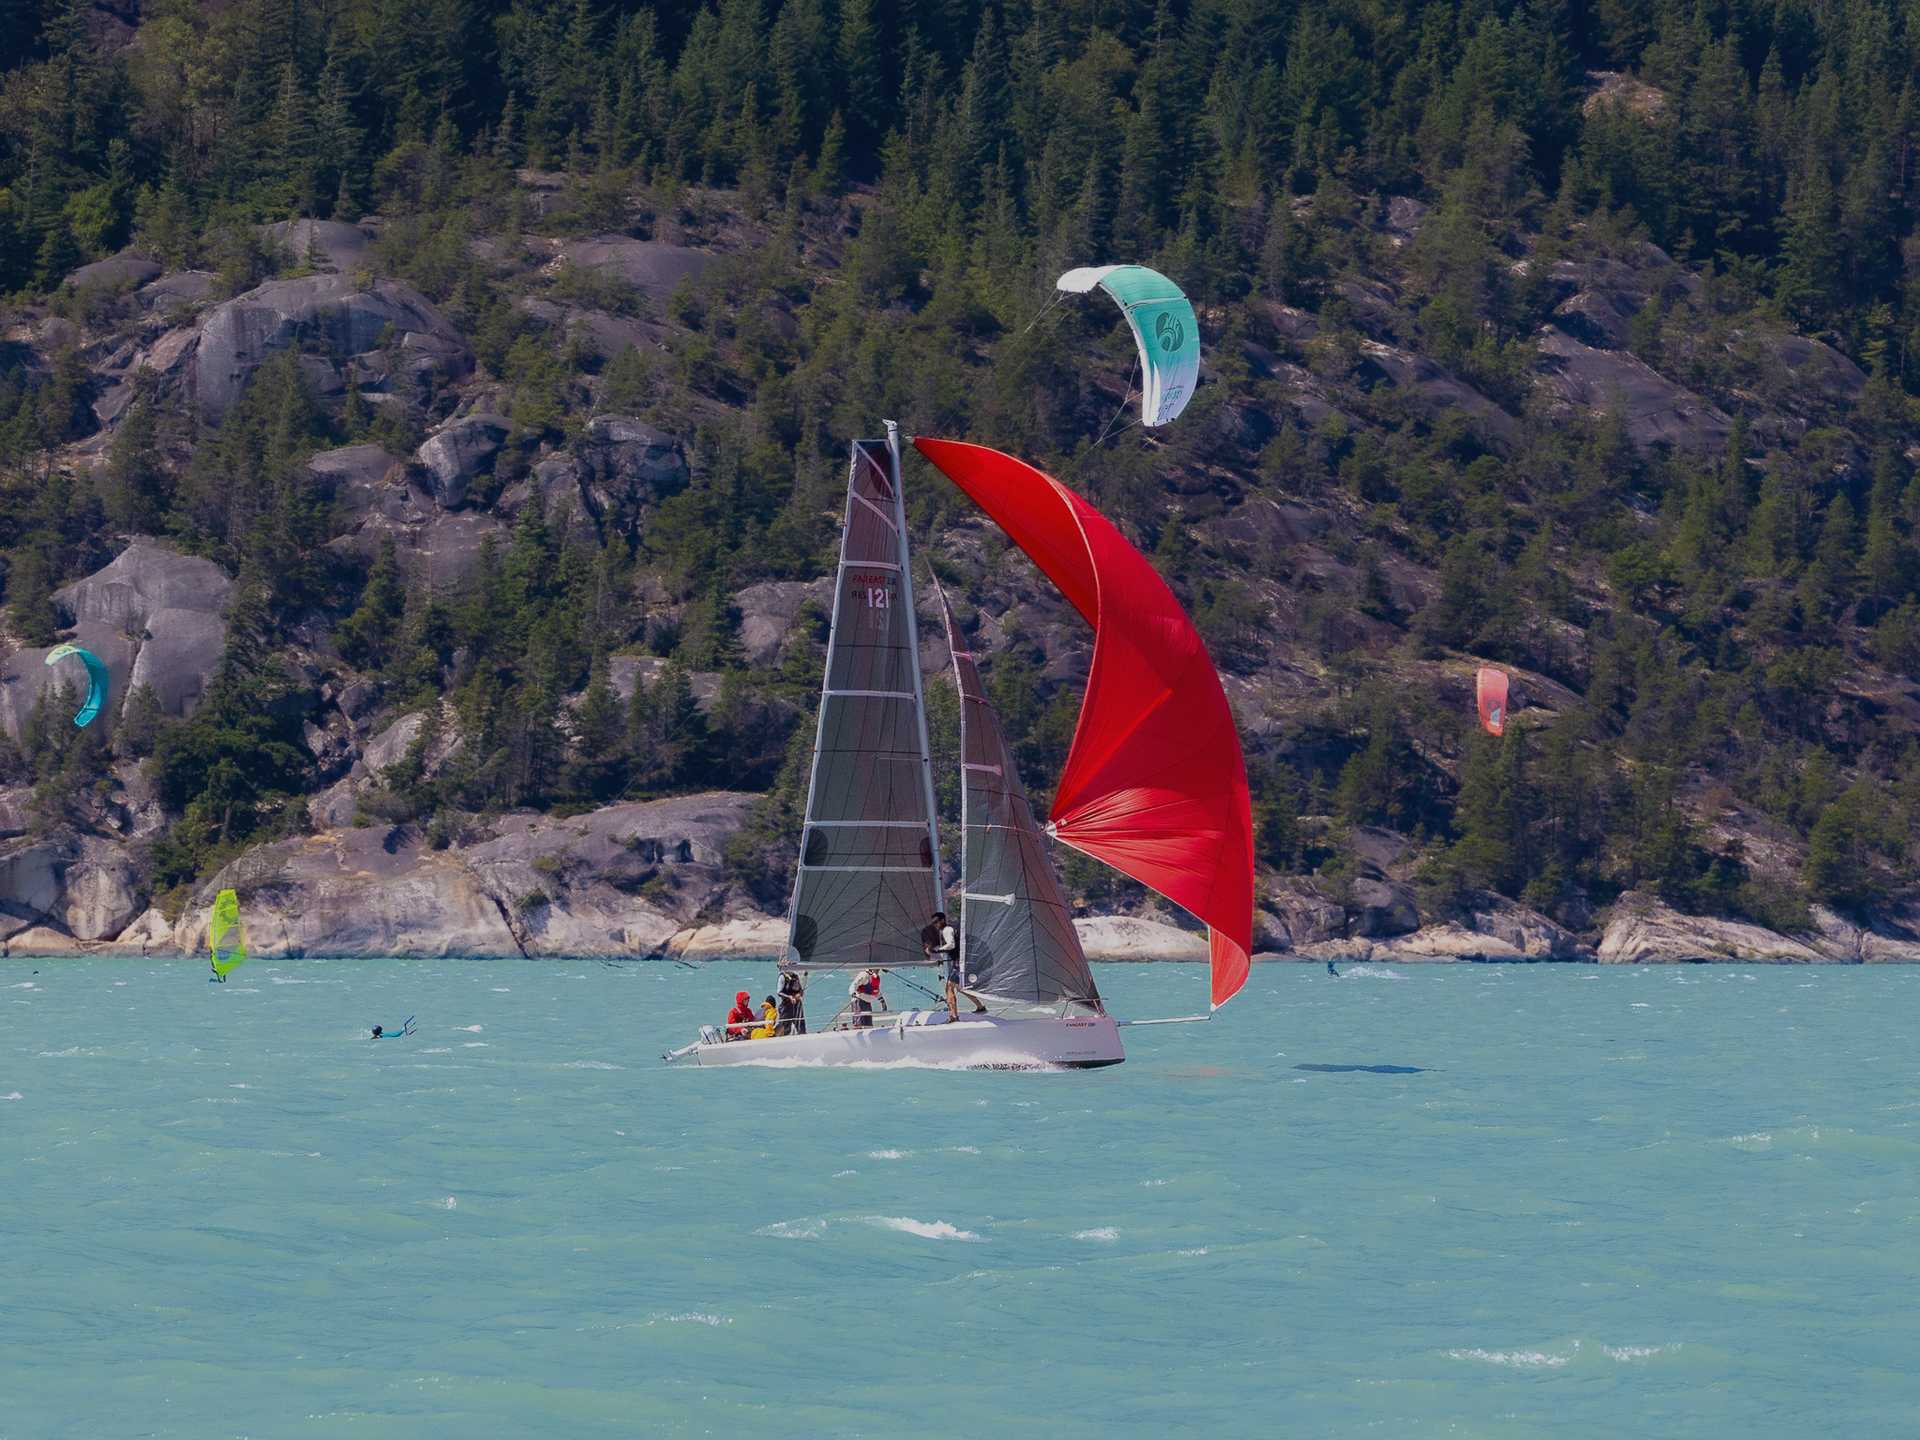 Kiteboarders enjoying the legendary wind of Squamish